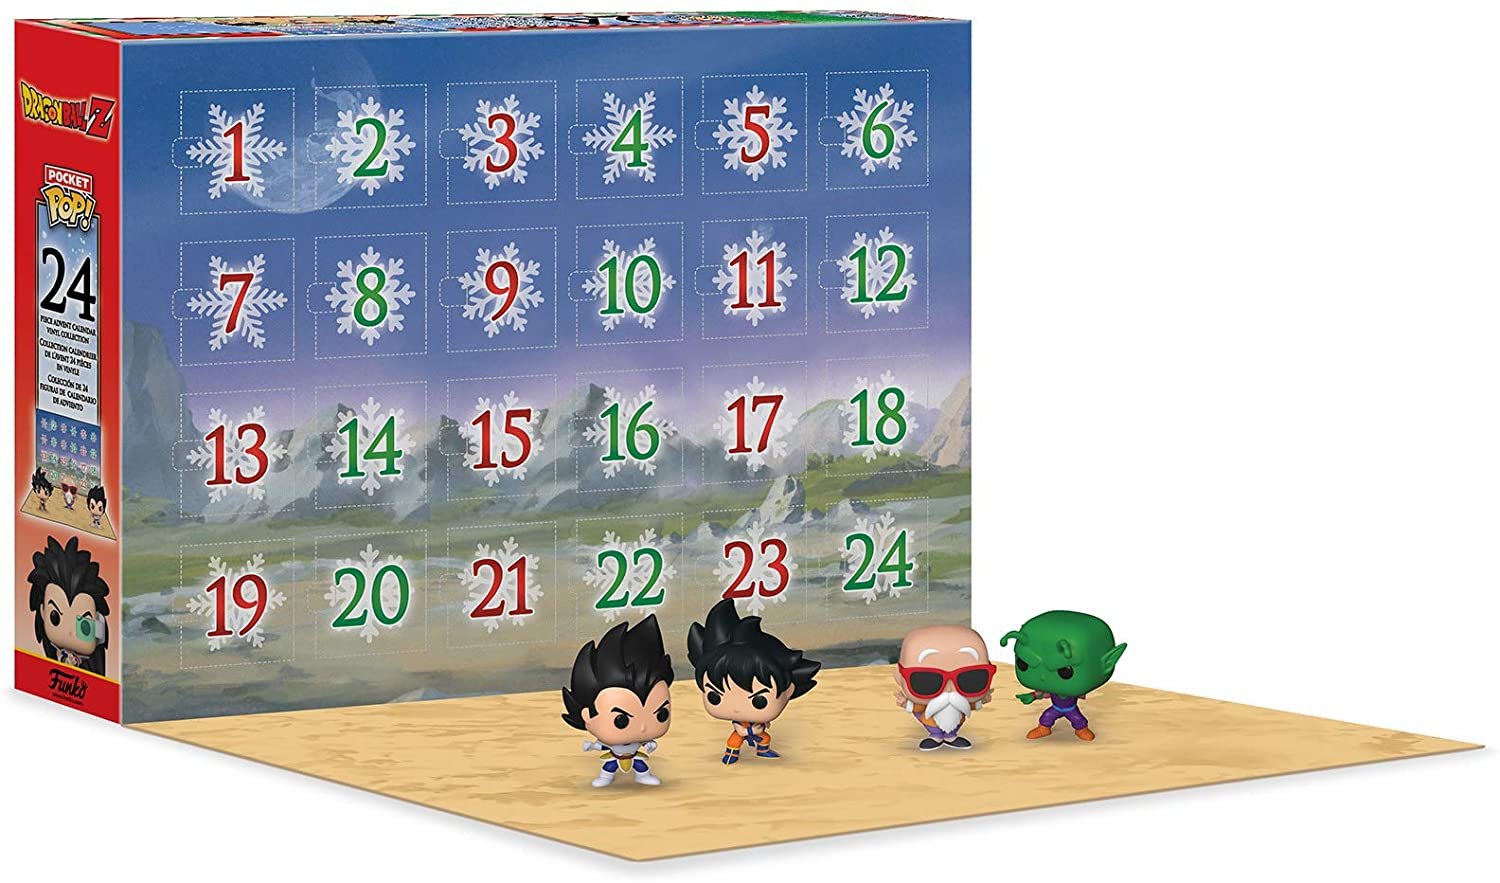 Funko Advent Calendar: Dragon Ball Z 2020 Multicolor 889698496605 eBay